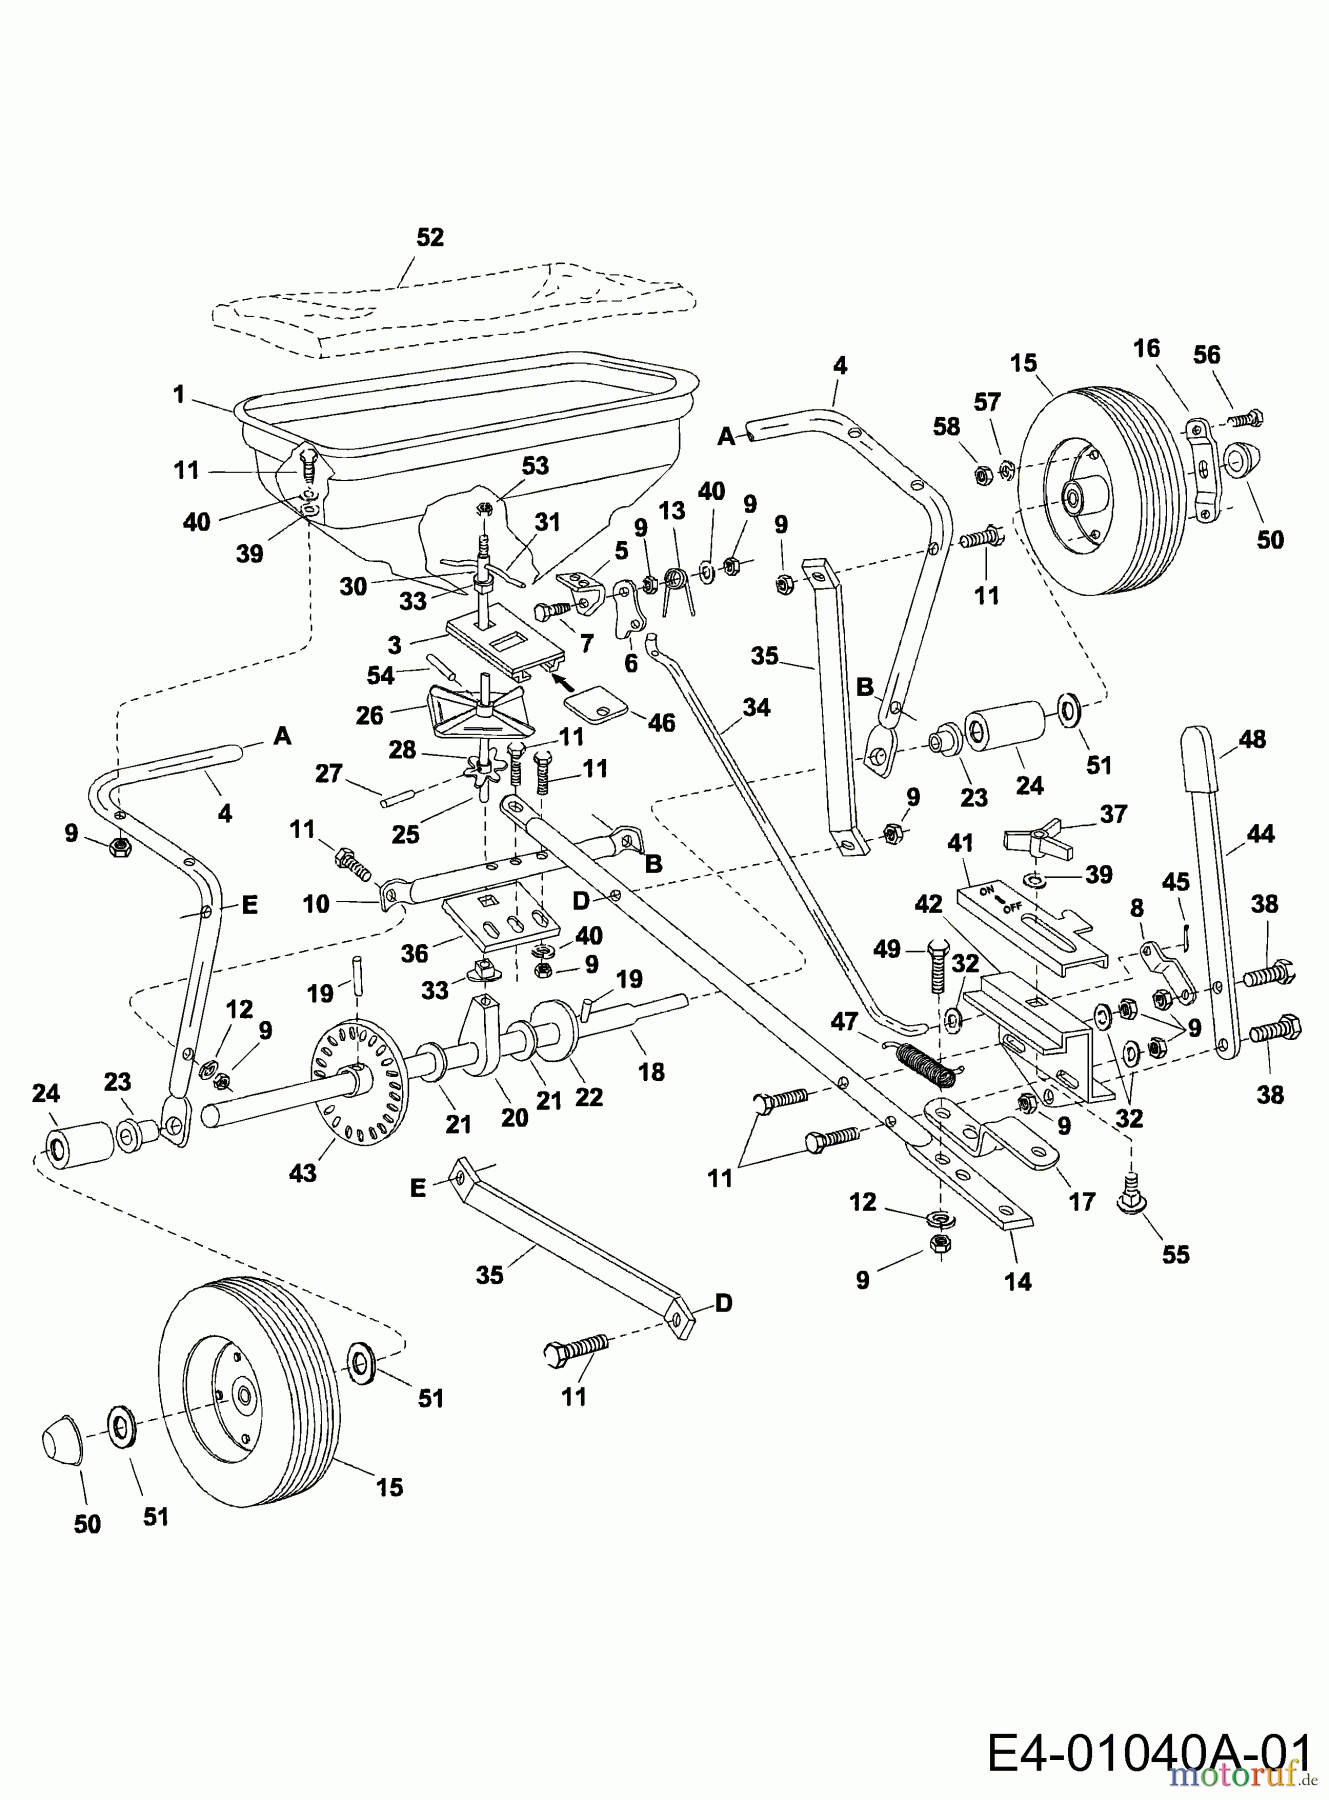  MTD Accèssoires Accèssoires tracteur de jardin et de pelouse Epandeur 45-02151  (190-525-000) 190-525-000  (1999) Machine de base